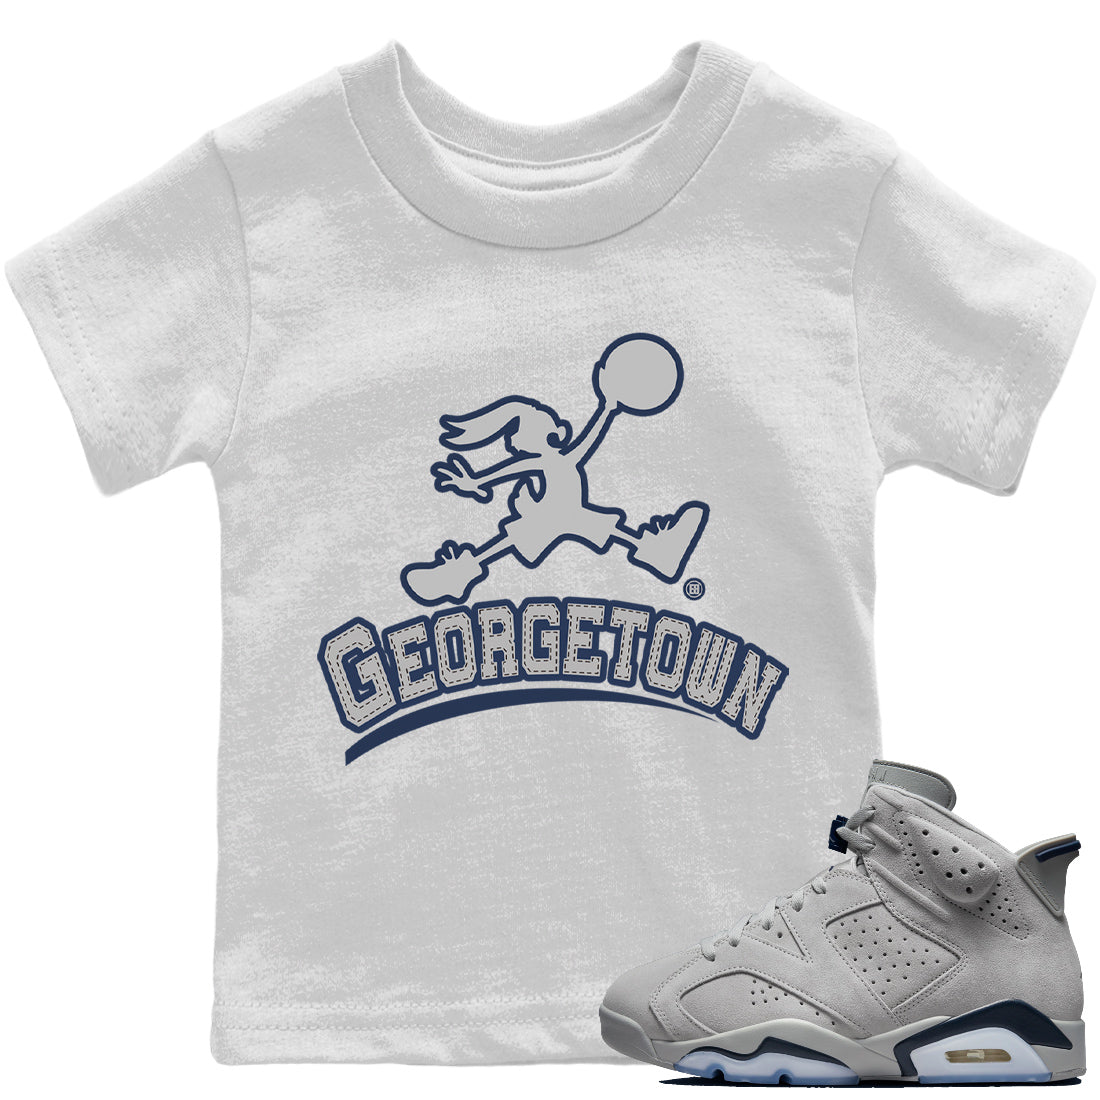 Jordan 6 Georgetown Sneaker Match Tees Jumpman Bunny Sneaker Tees Jordan 6 Georgetown Sneaker Release Tees Kids Shirts